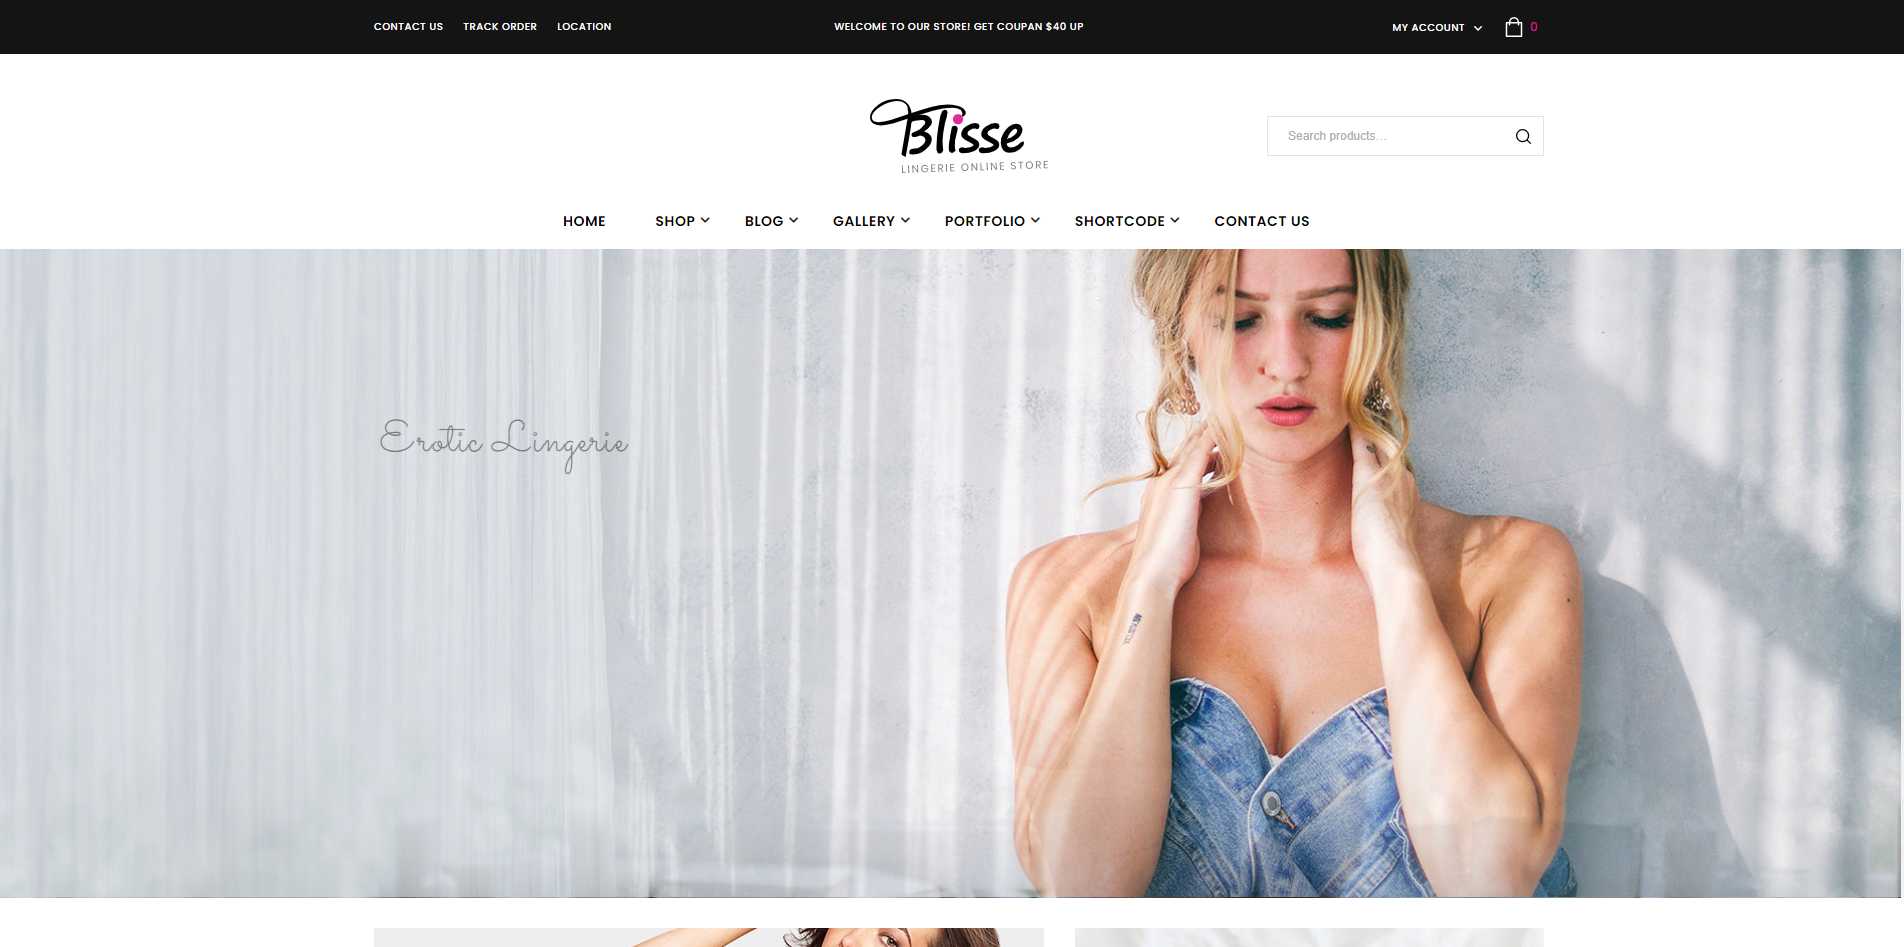 Blisse_ Lingerie Online Store WooCommerce Theme